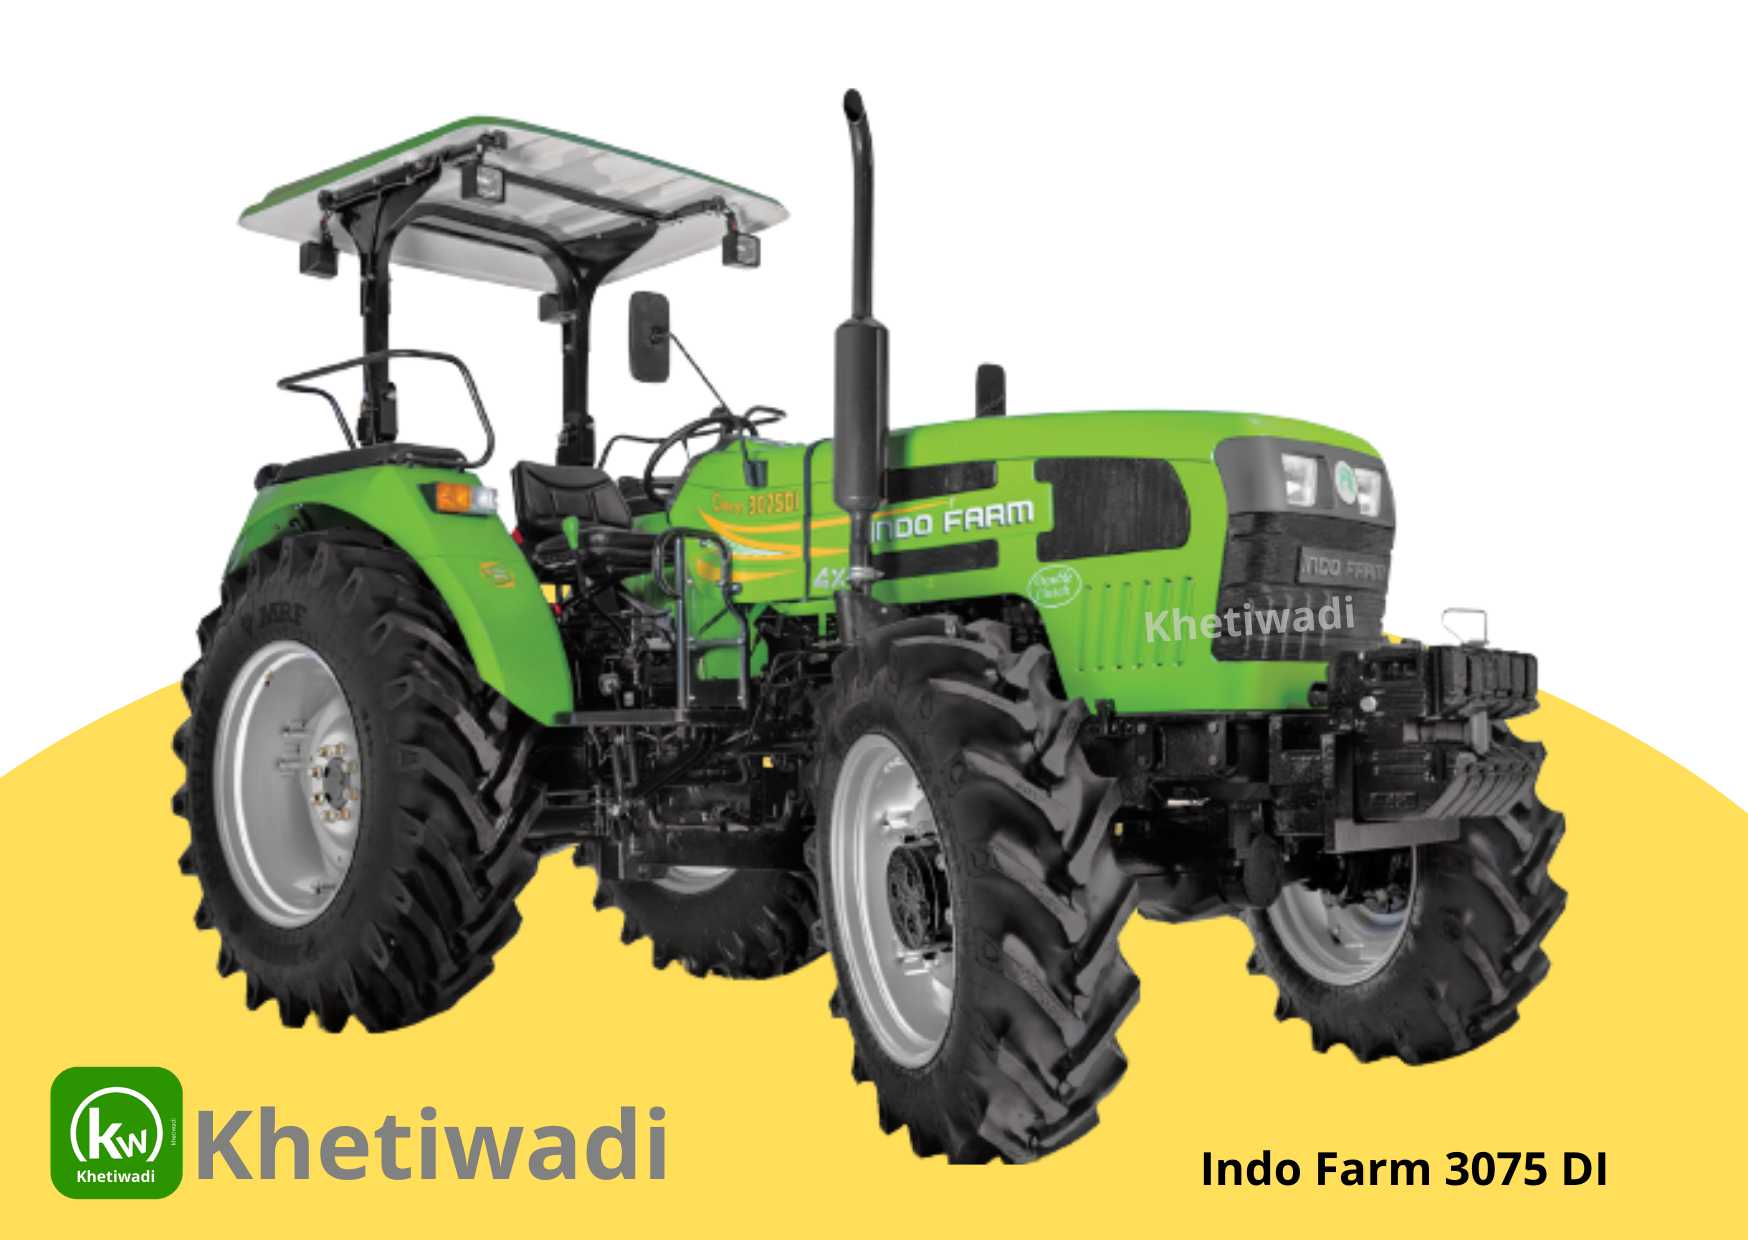 Indo Farm 3075 DI image